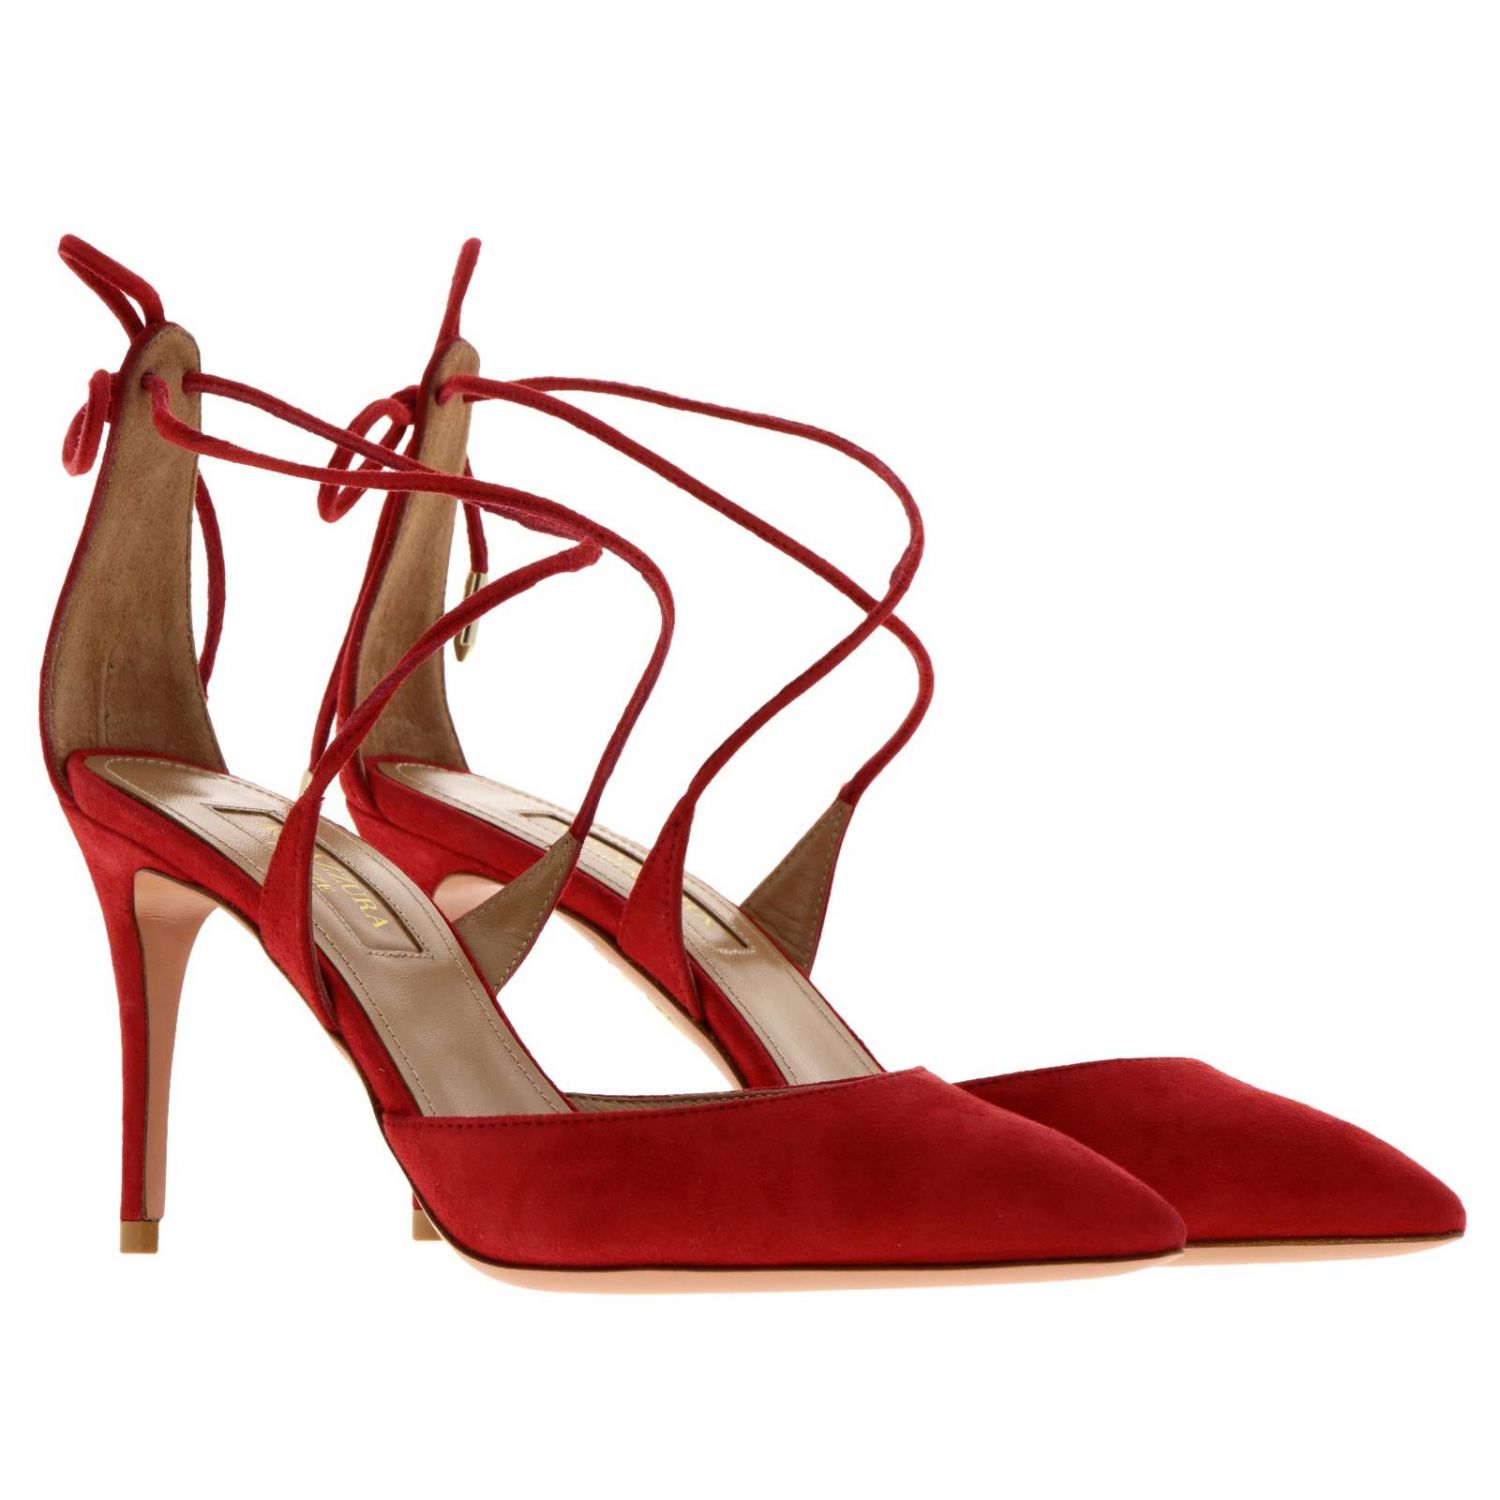 Shoes women Aquazzura | High Heel Shoes Aquazzura Women Red | High Heel ...